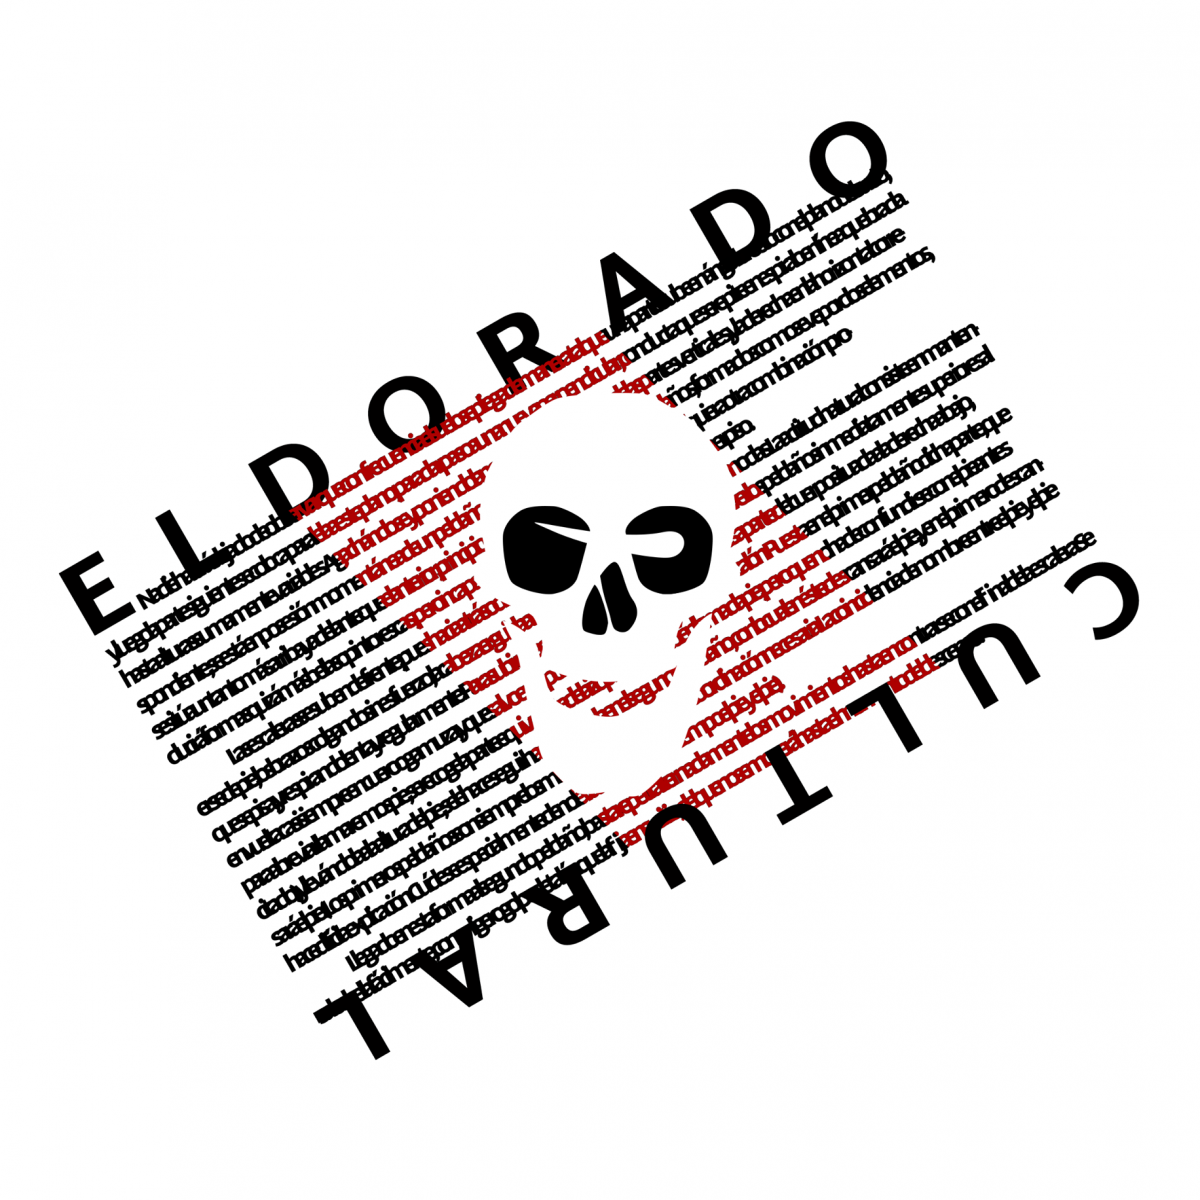 https://www.toledo.es/wp-content/uploads/2022/06/251860221_417521946718076_3759672822635462219_n-1200x1200.png. Ciclo #Somoscooperativa: La economía social y solidaria en red